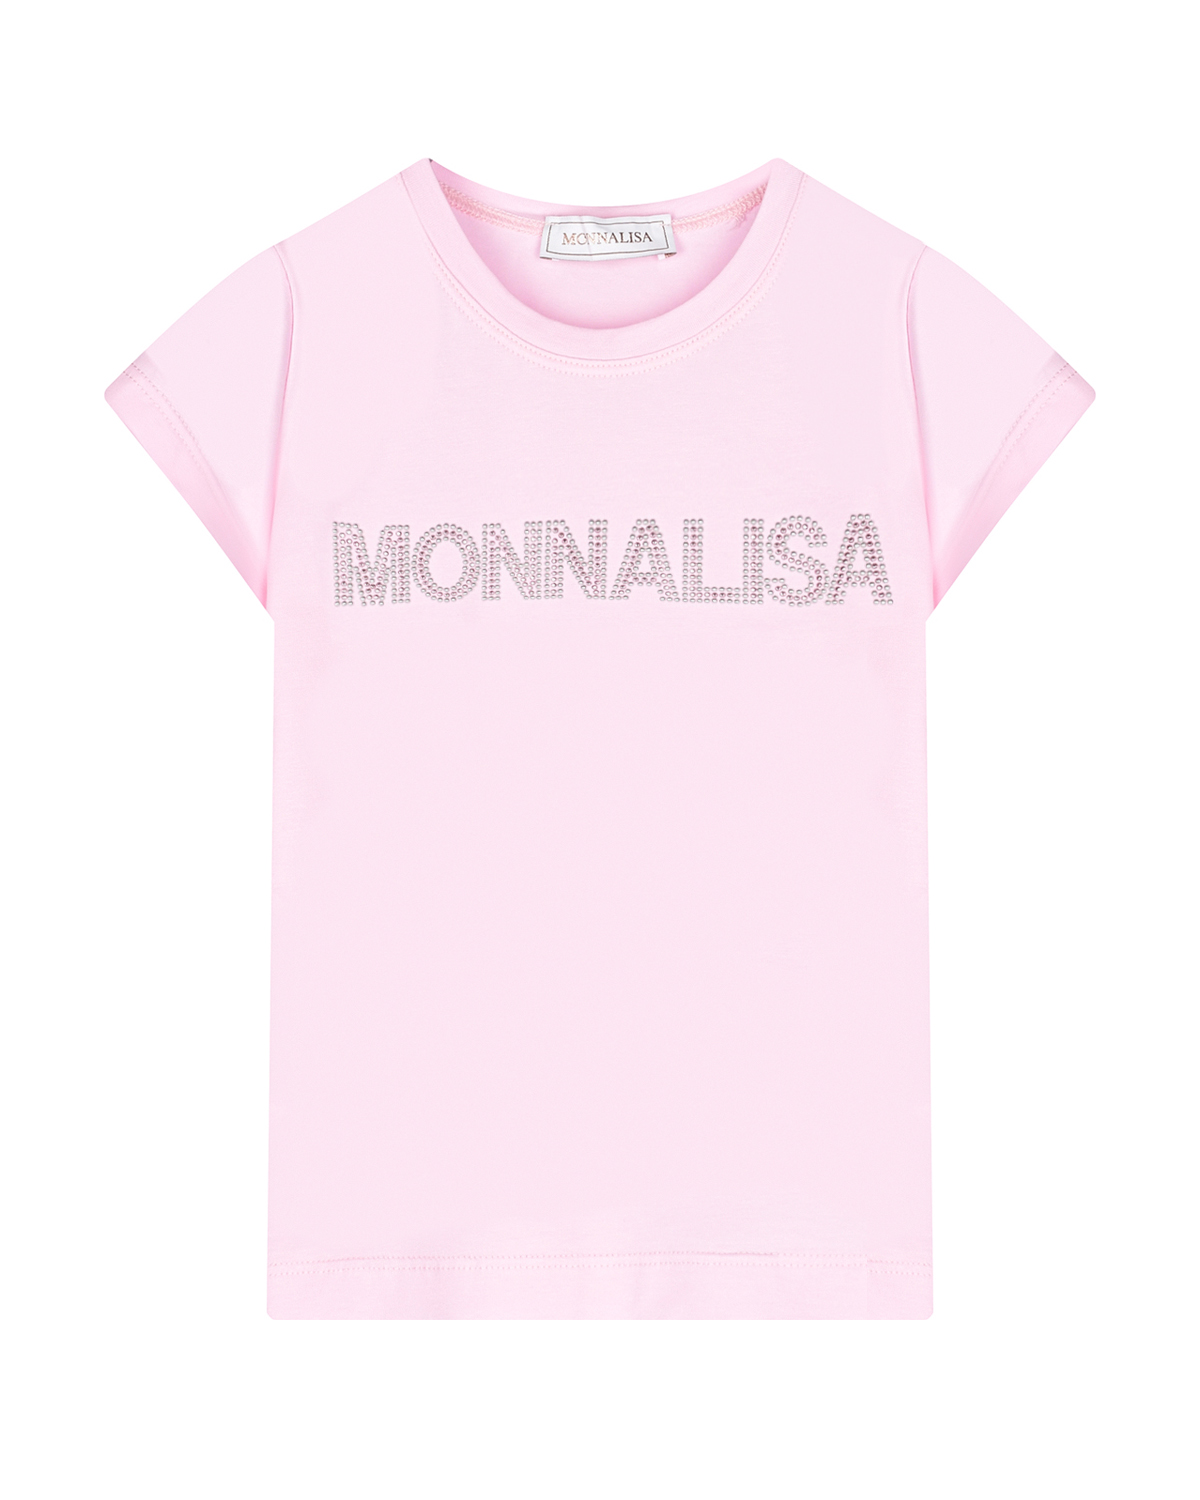 Розовая футболка с лого из стразов Monnalisa футболка трикотажная зария розовая